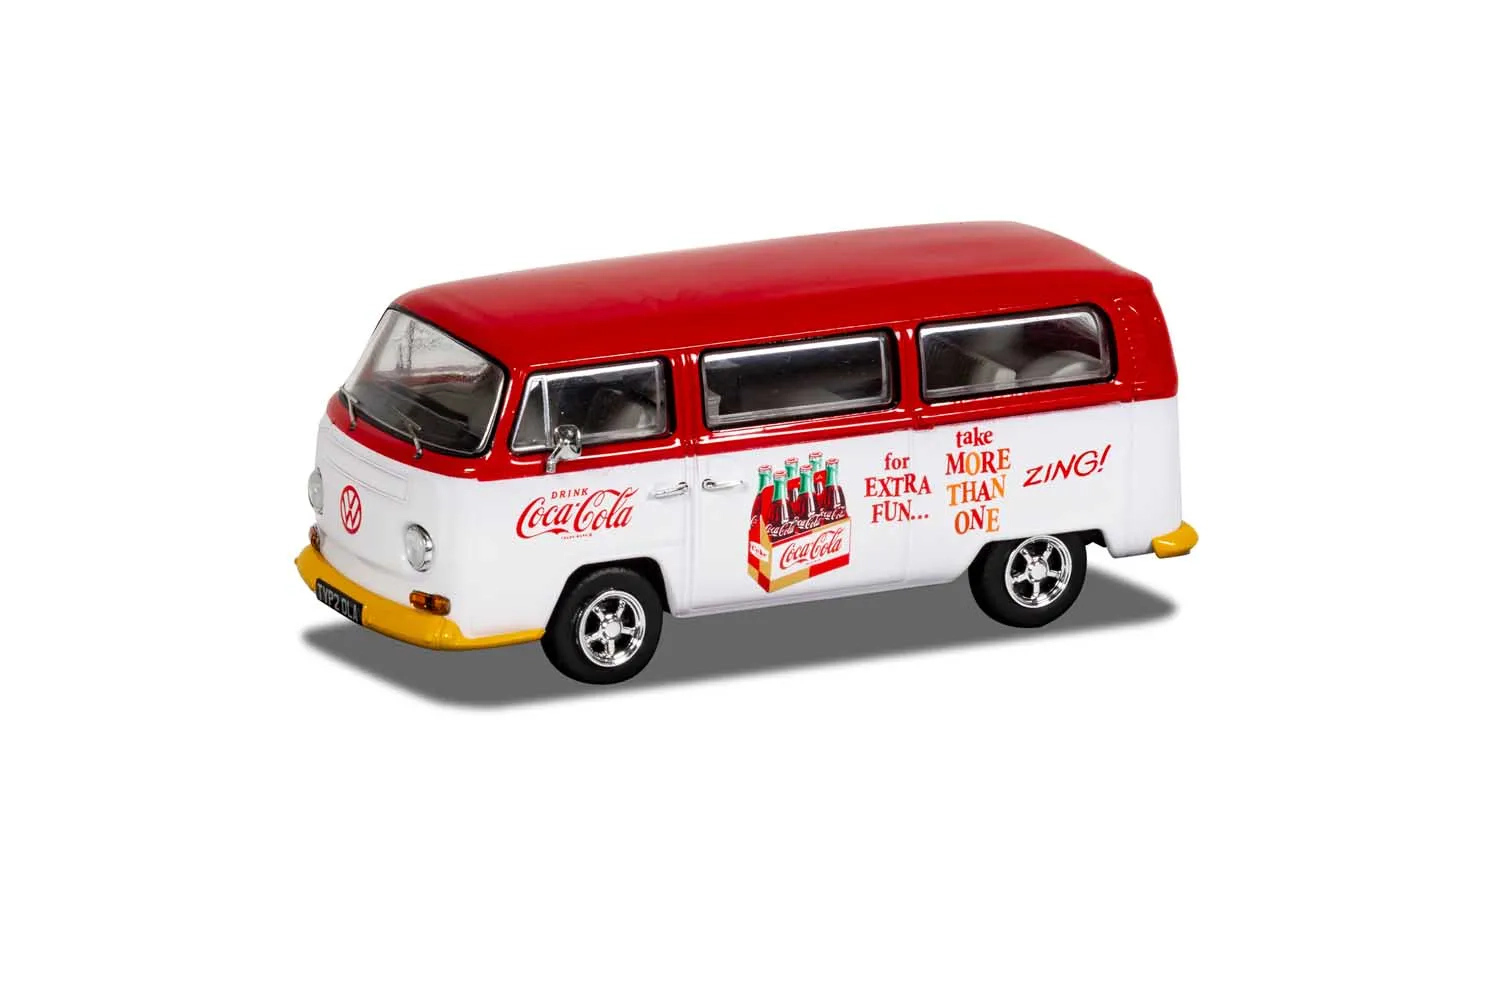 Coca-Cola Volkswagen Campervan - Zing